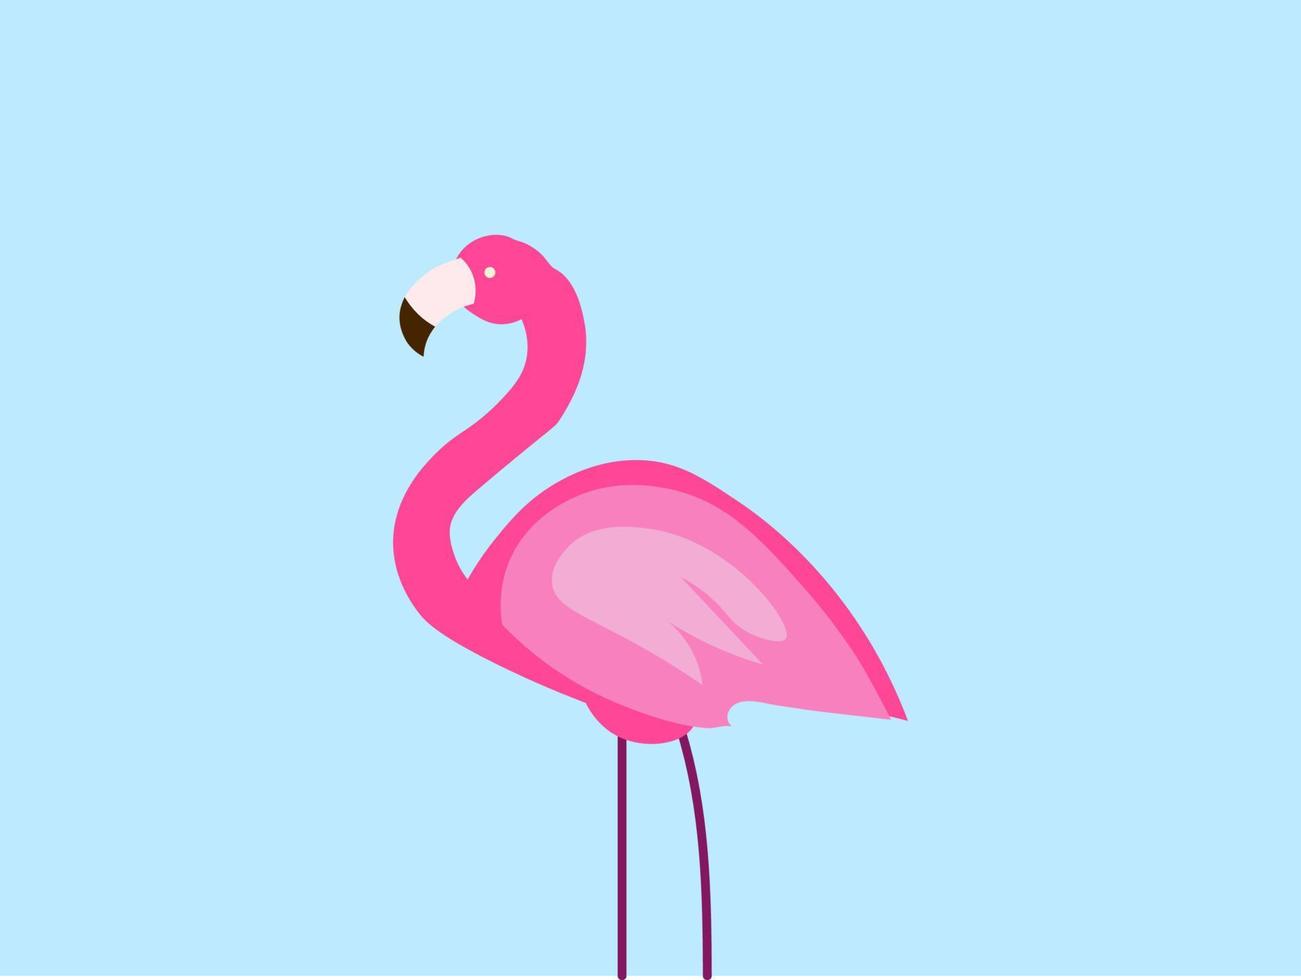 flamingo rosa, ilustração, vetor em fundo branco.